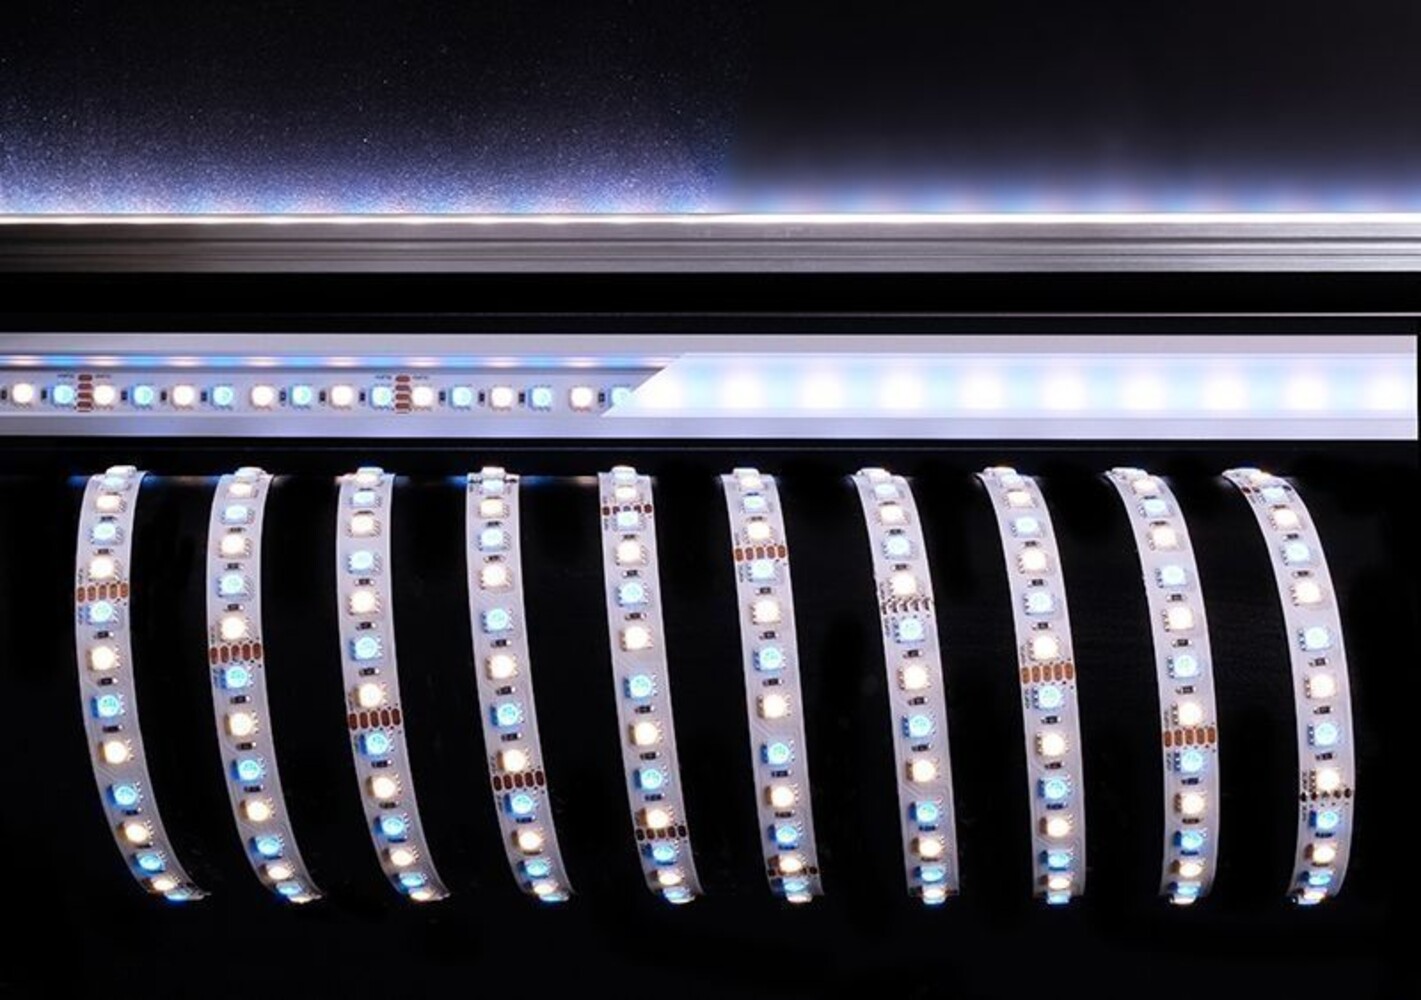 Beeindruckend helles Licht von einem flexiblen LED-Streifen der Marke Deko-Light